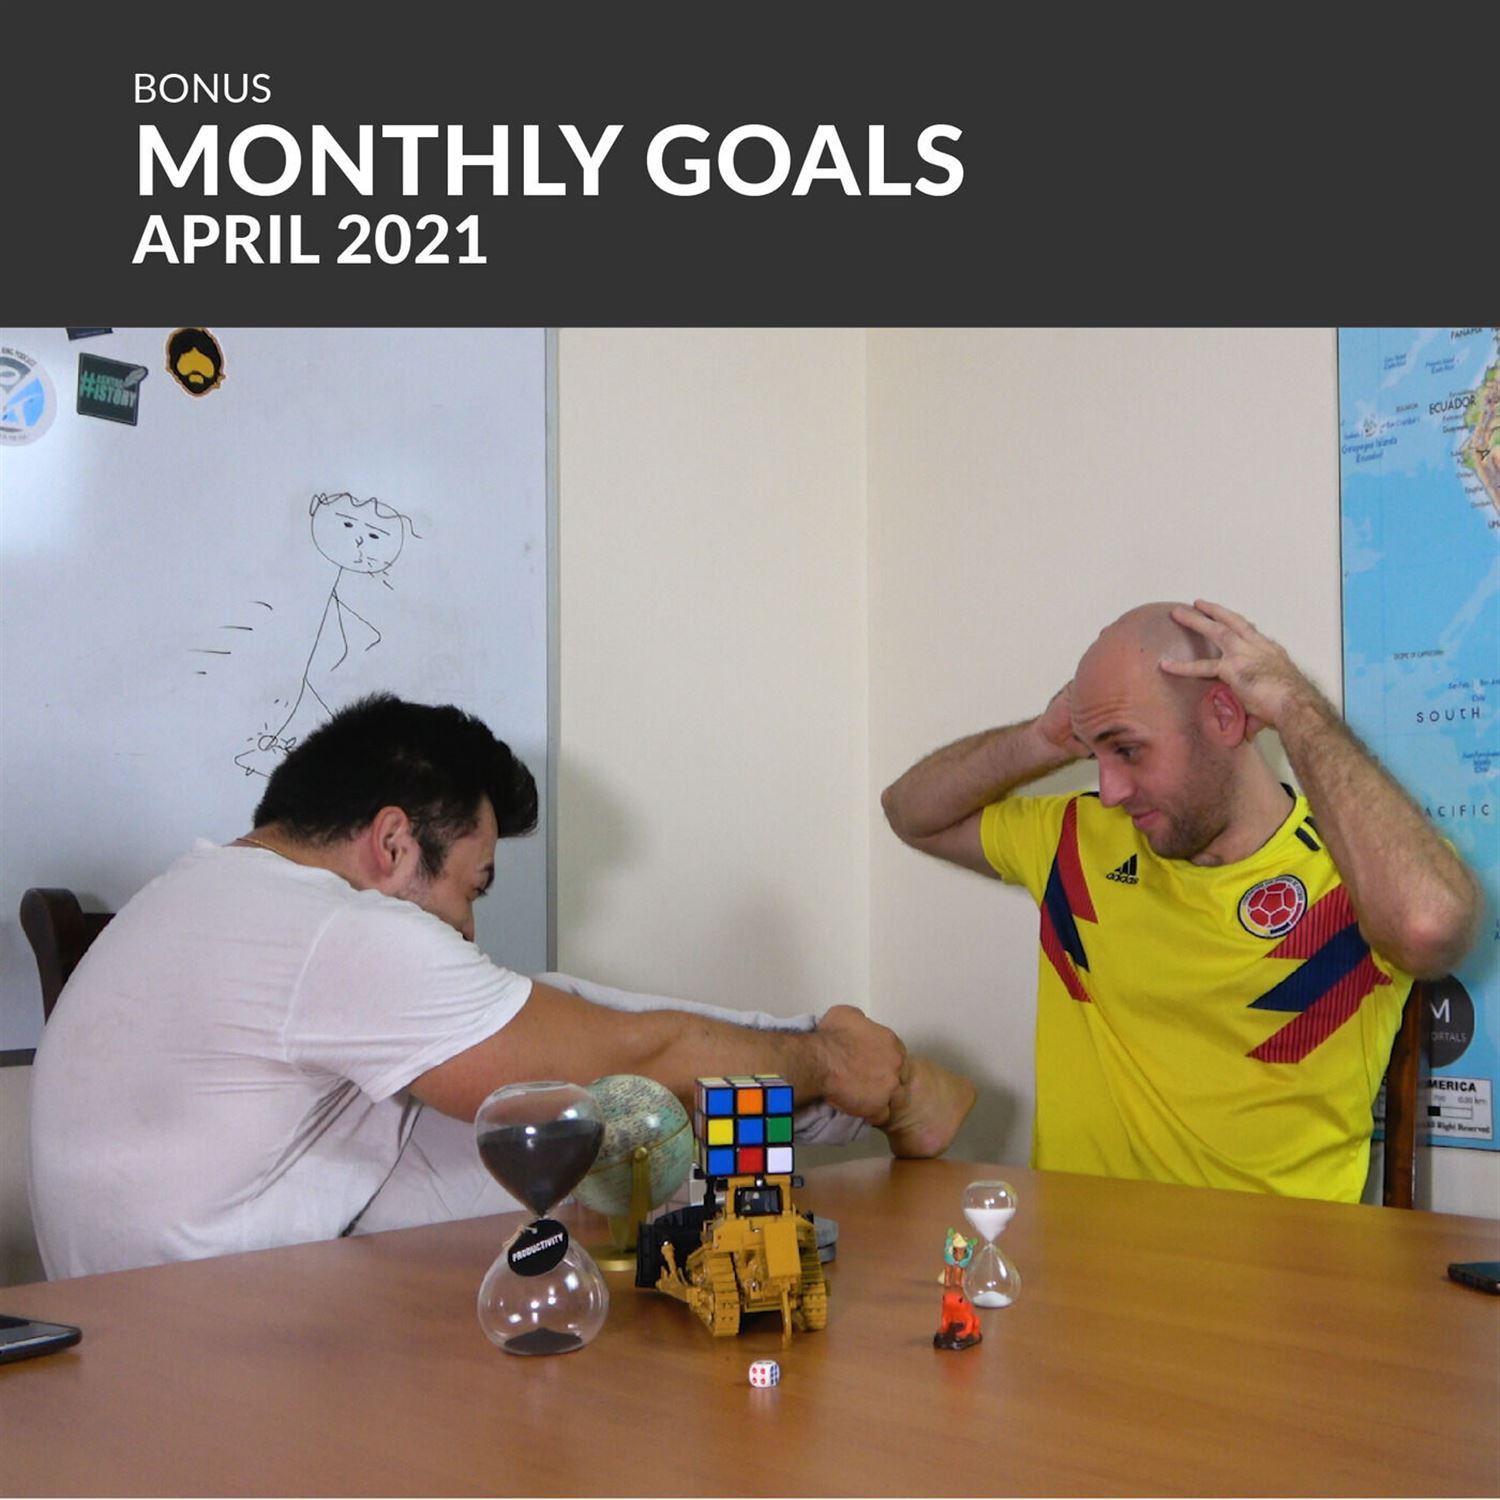 Mere Mortals Monthly Goals - April 2021